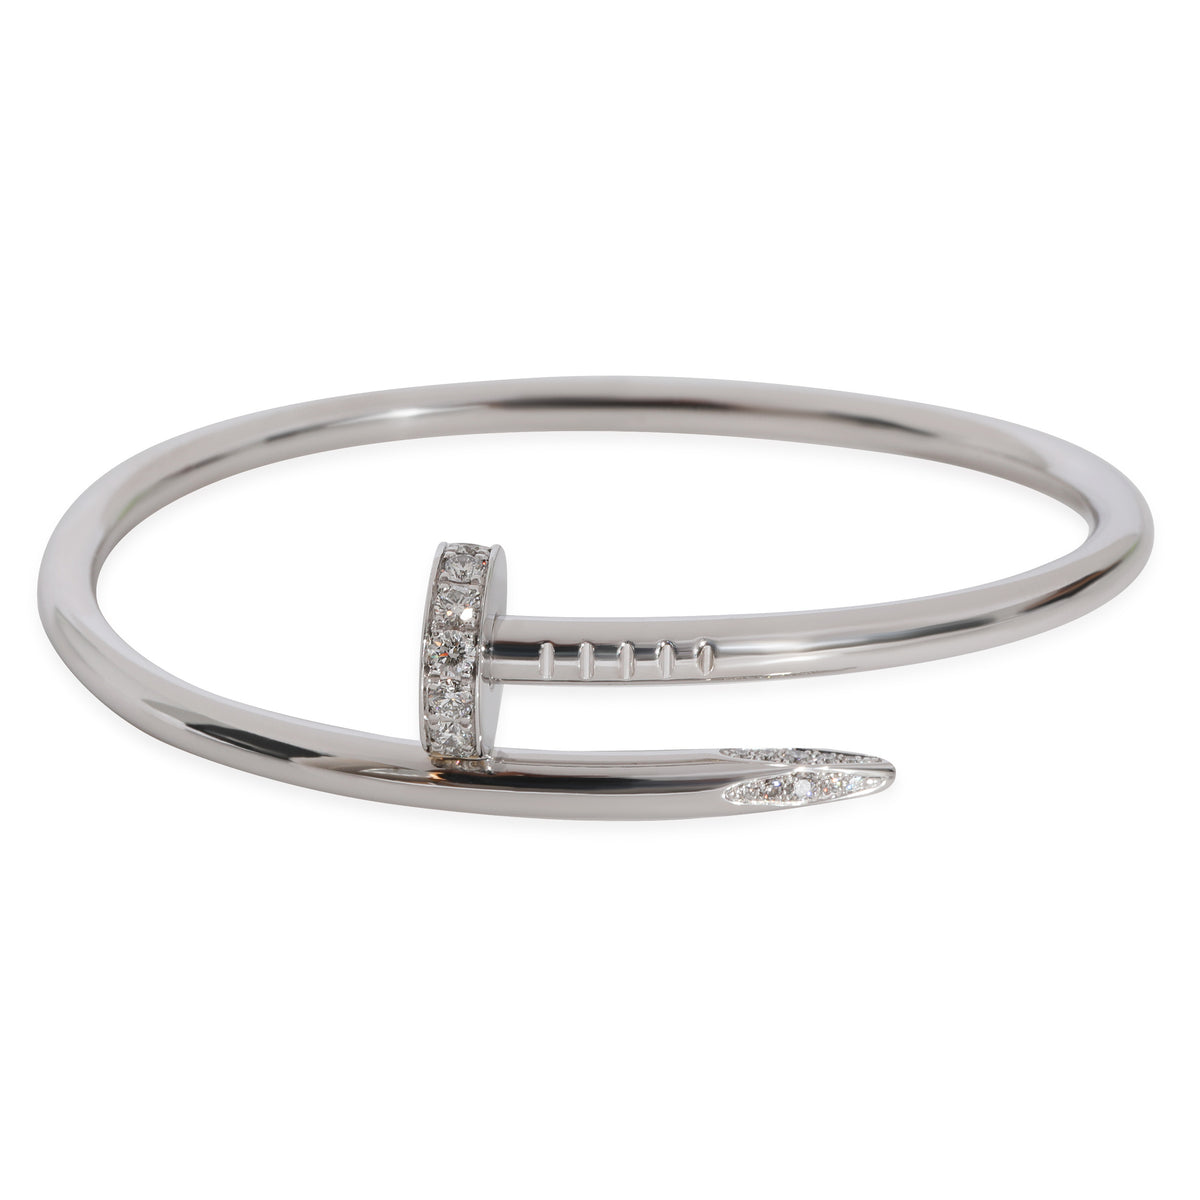 Louis Vuitton - Empreinte Ring White Gold and Diamonds - Grey - Unisex - Size: 58 - Luxury